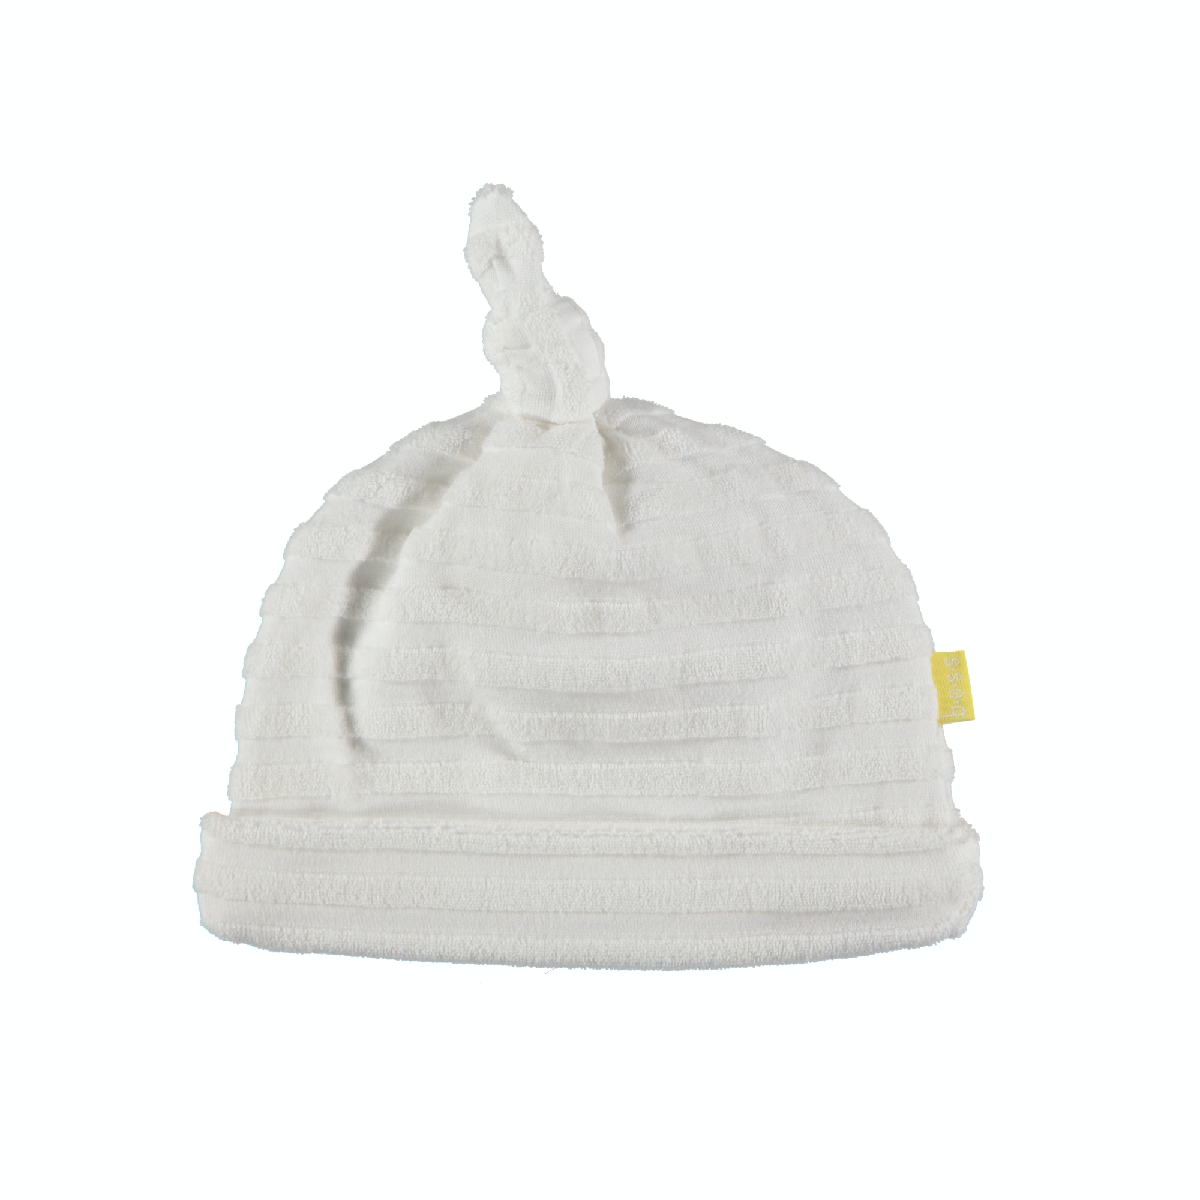 Unisexs Hat Toweling van B.E.S.S. in de kleur White in maat 1.